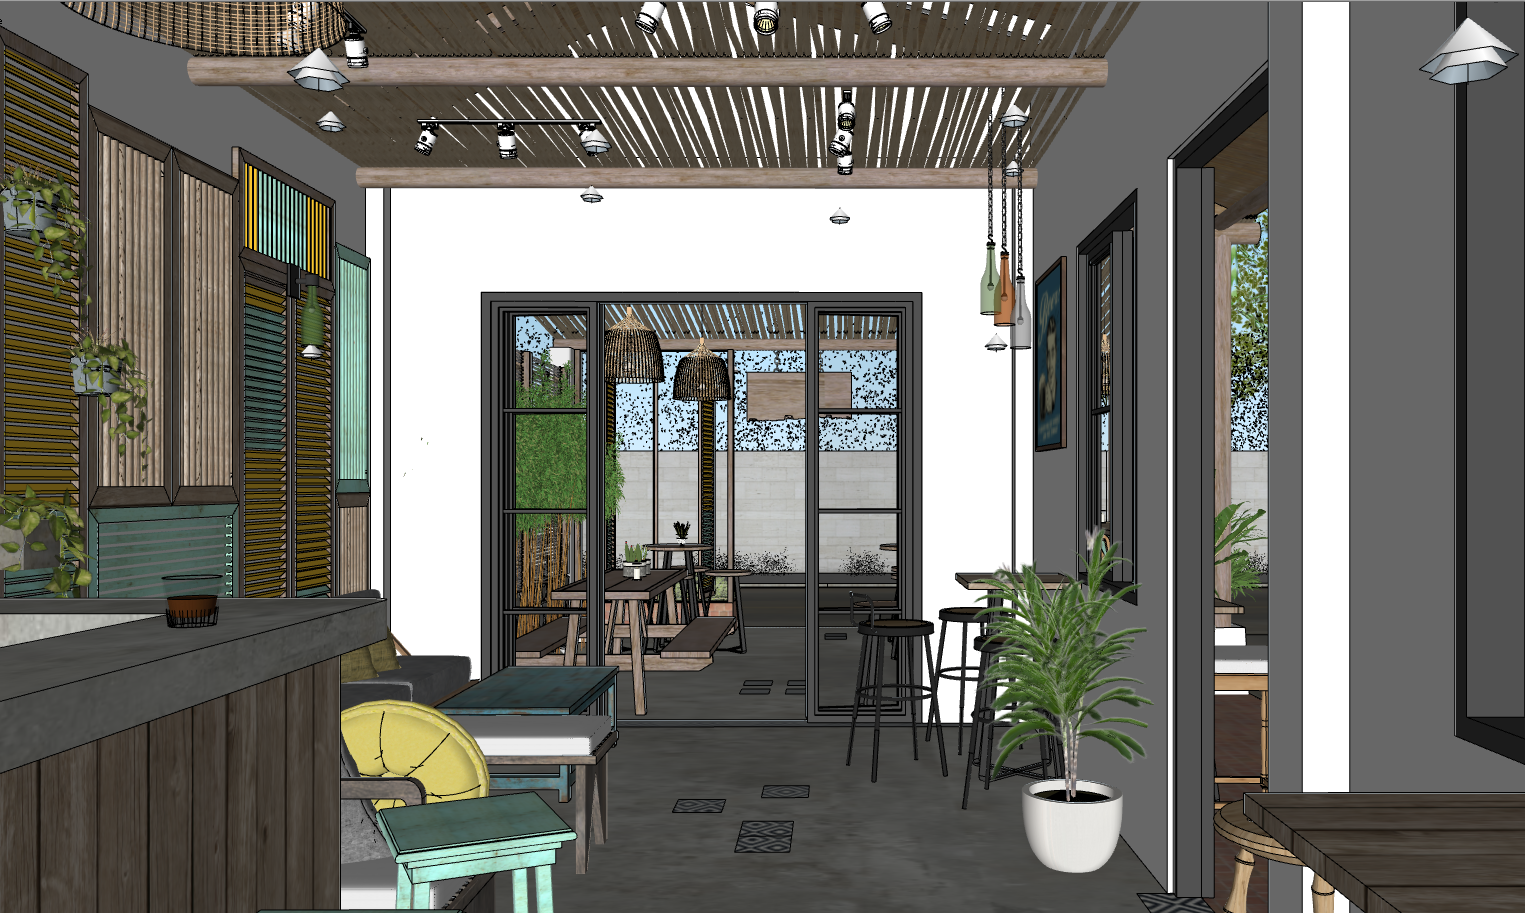 sketchup nội thất quán,file sketchup quán cafe,model 3dsu dựng quán coffee